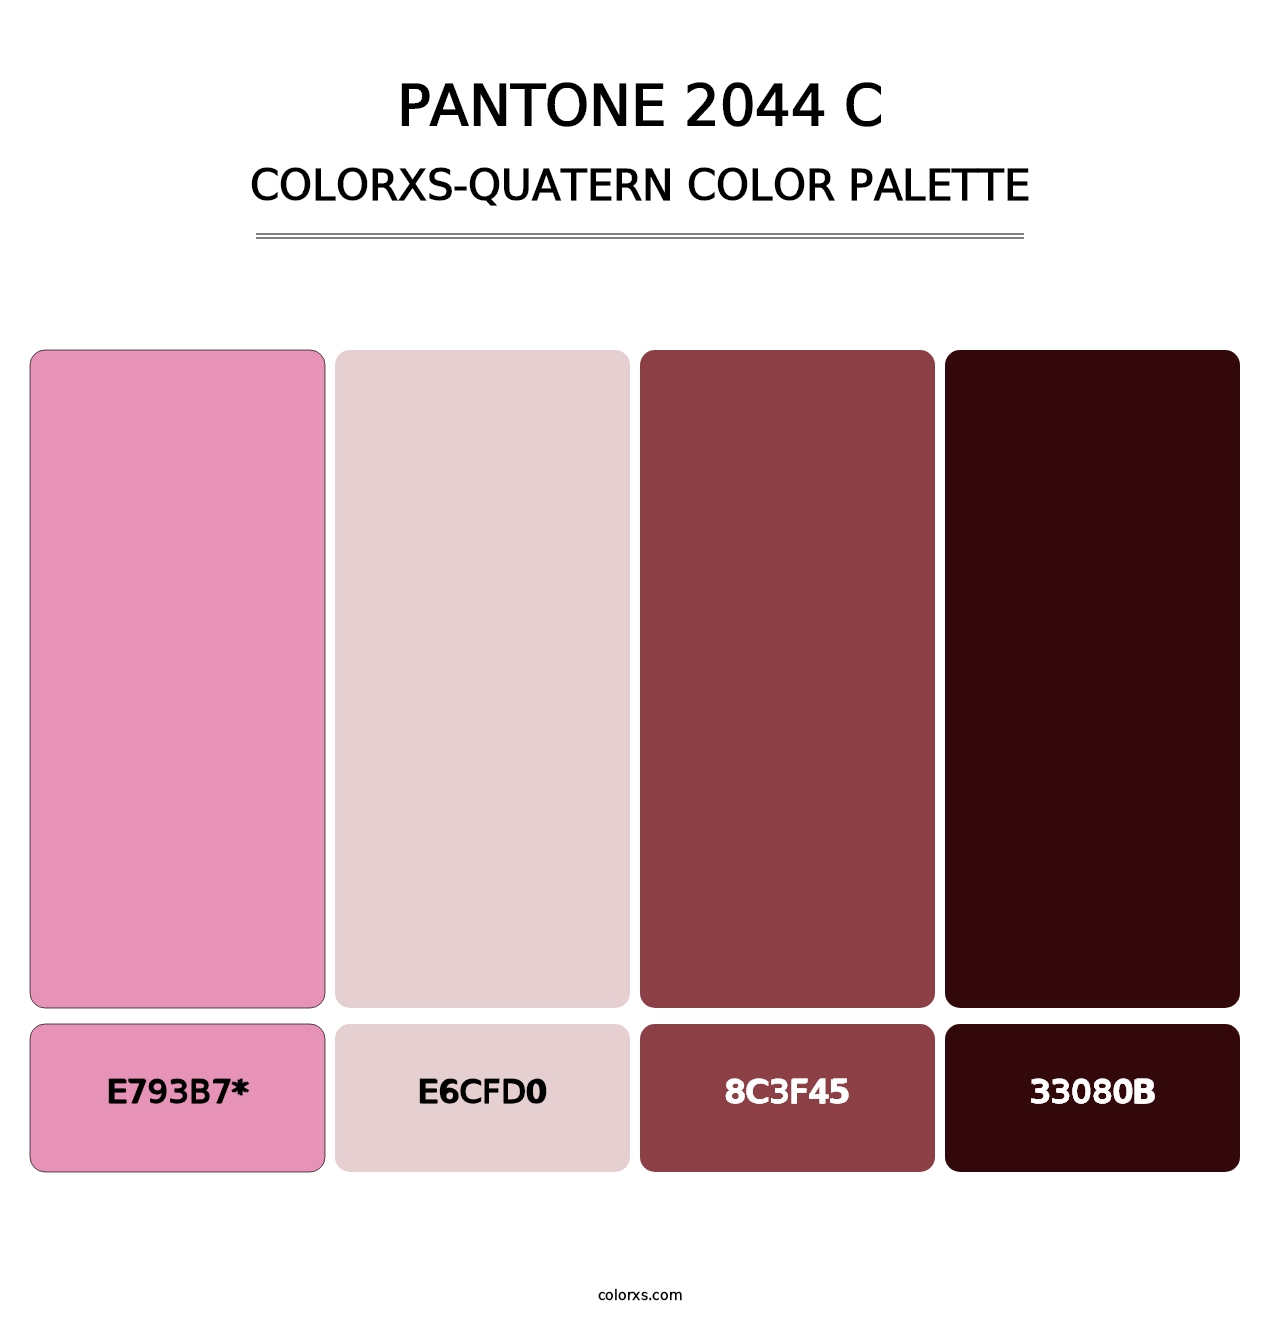 PANTONE 2044 C - Colorxs Quatern Palette